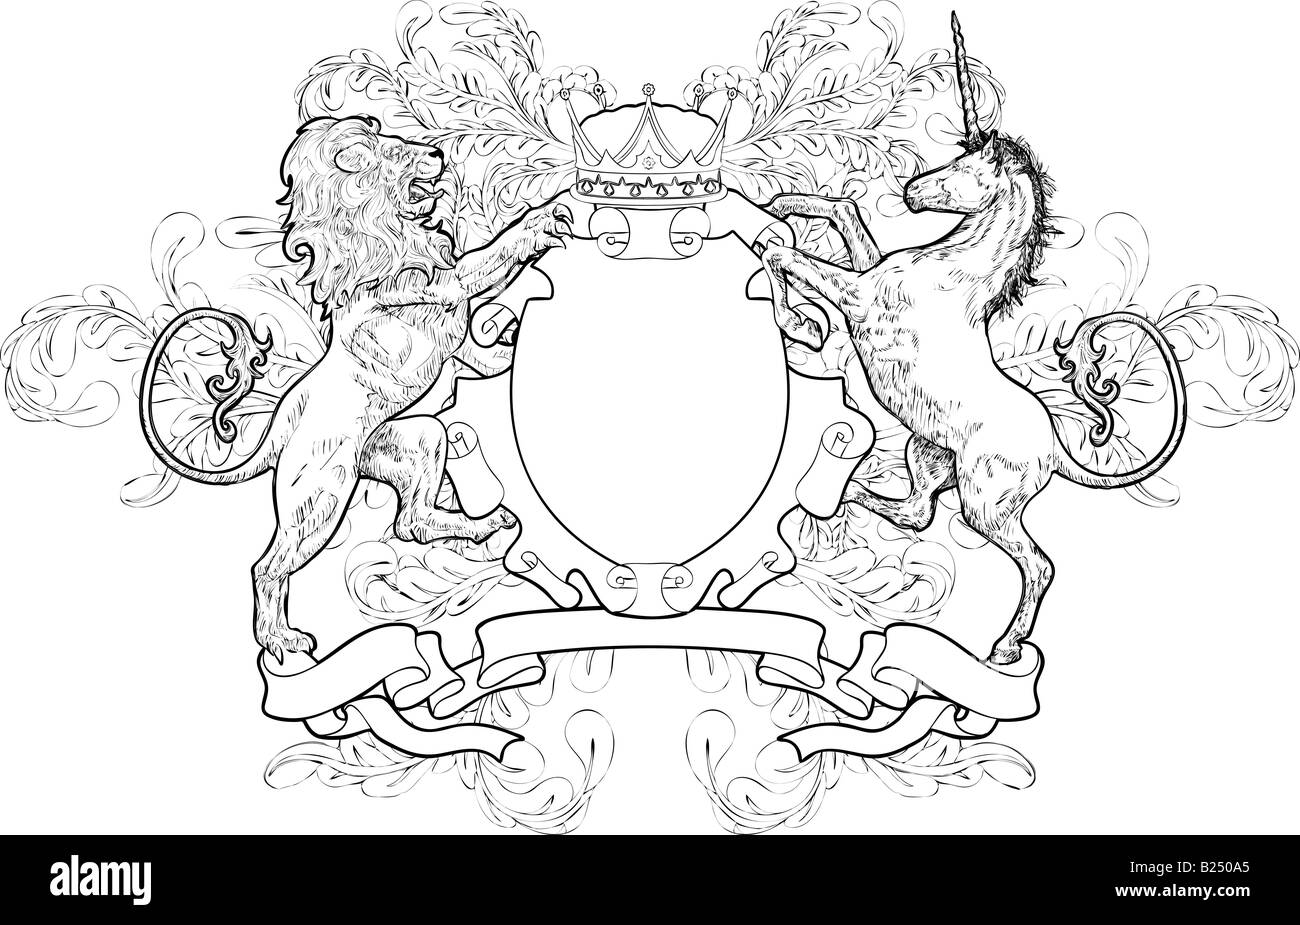 Lion Monochrome et Unicorn des armoiries. Un écran noir et blanc élément armoiries doté d''un lion, licorne et couronne Banque D'Images